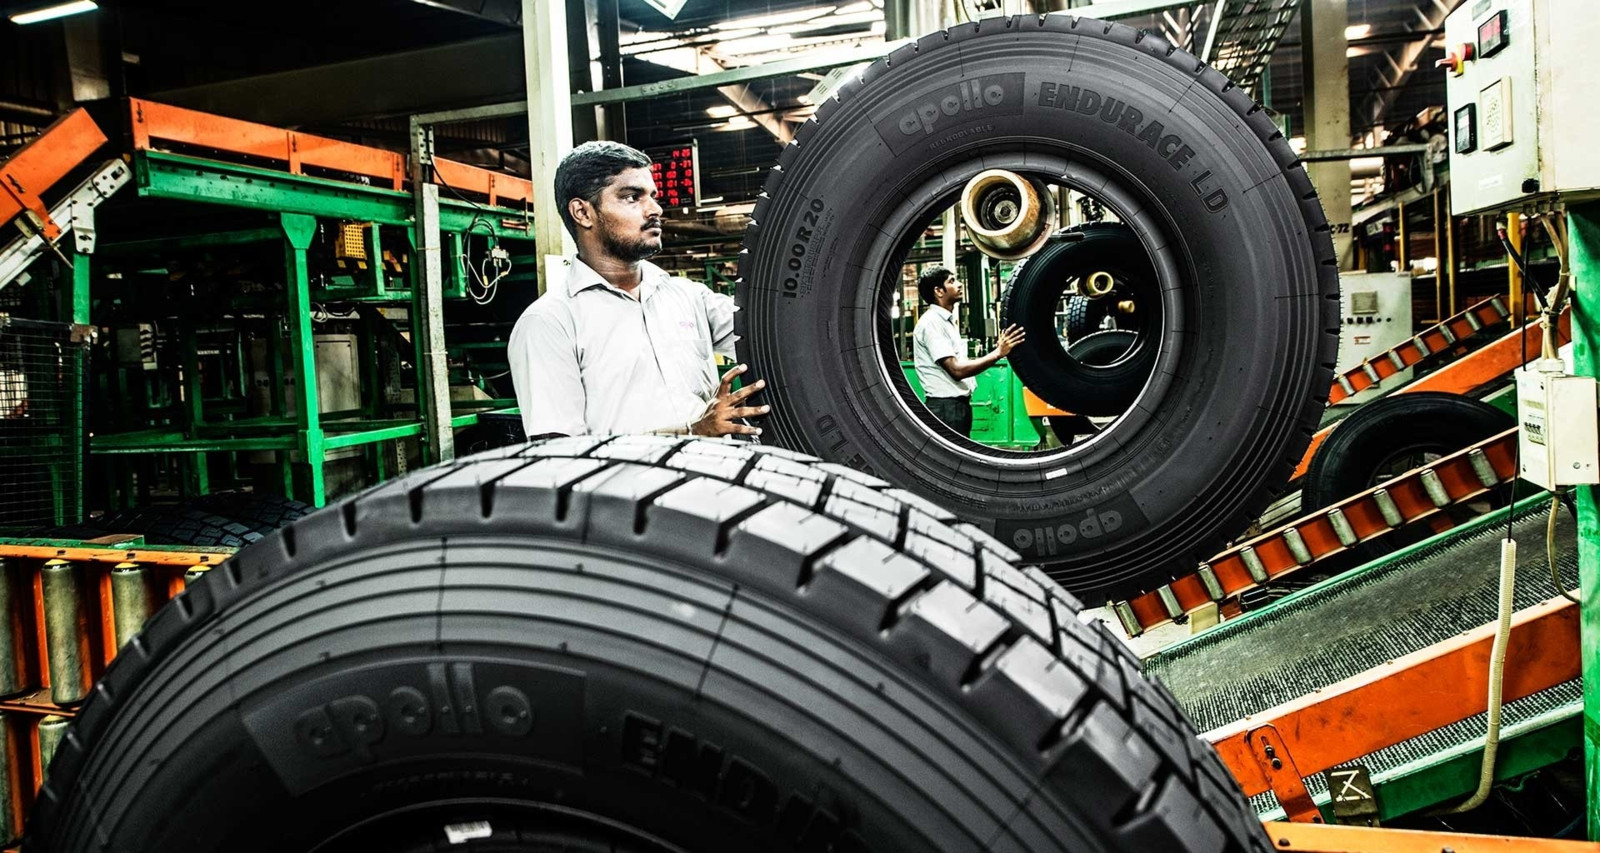 Apollo bereitet sich für nachhaltige Mobilitätslösungen vor und hat Reifen entwickelt, die zu 75 Prozent aus nachhaltigen Materialien bestehen.